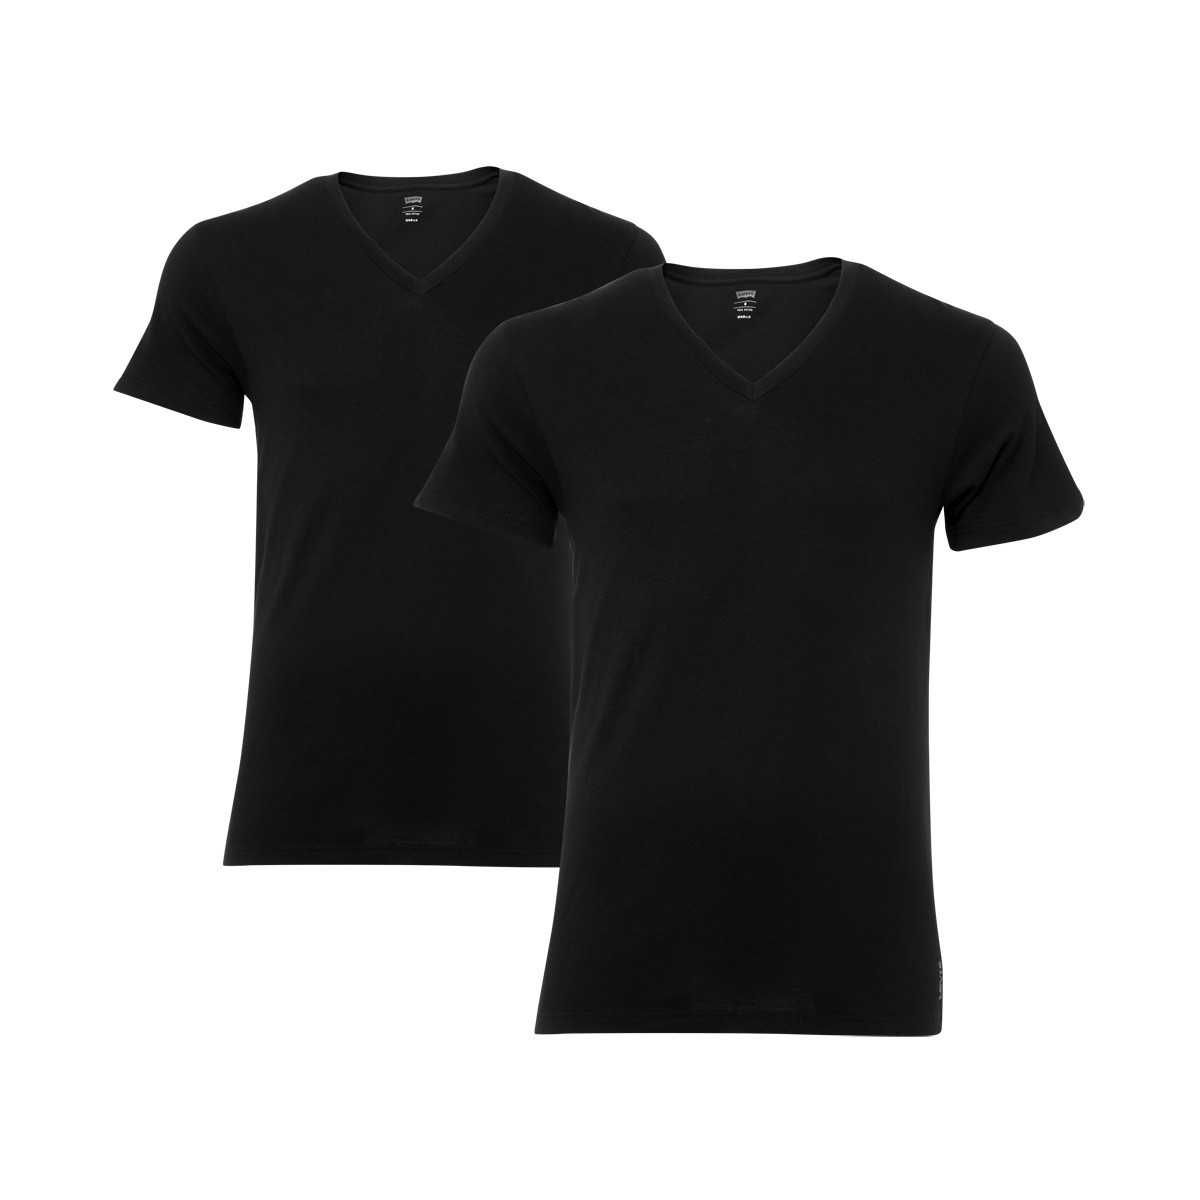 LEVIS Herren 2er Pack Basic V-Shirts Unterhemden V-Ausschnitt (JET BLACK, S)